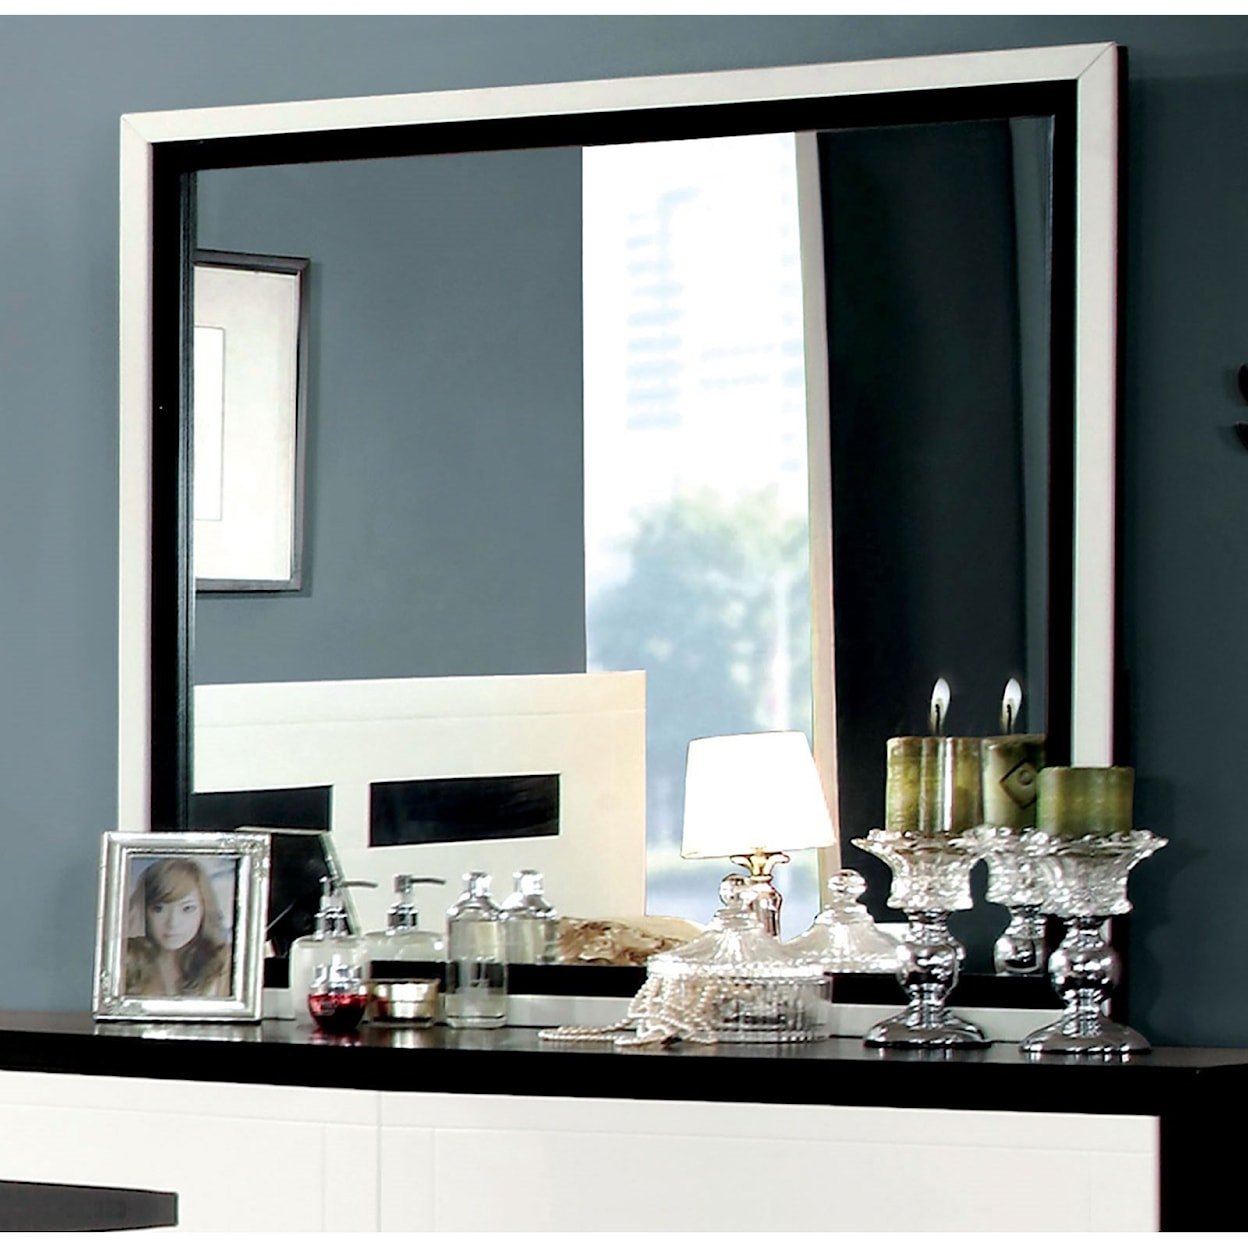 Furniture of America Rutger Dresser Mirror